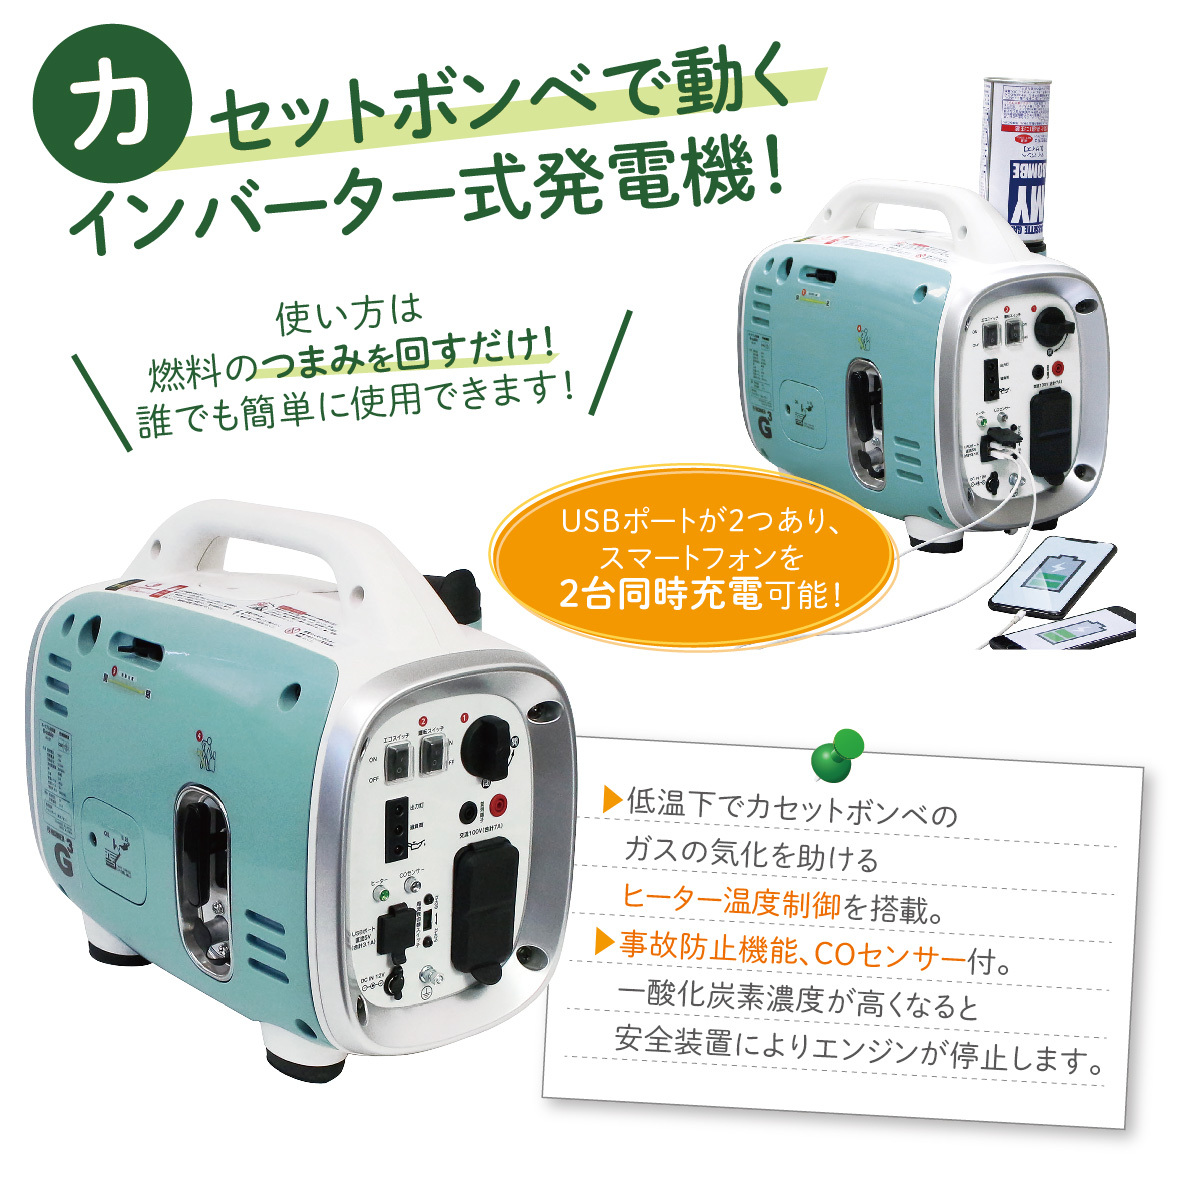 期間限定キャンペーン ニチネン ガスボンベで動く発電機 CREMA toyama-nozai.co.jp